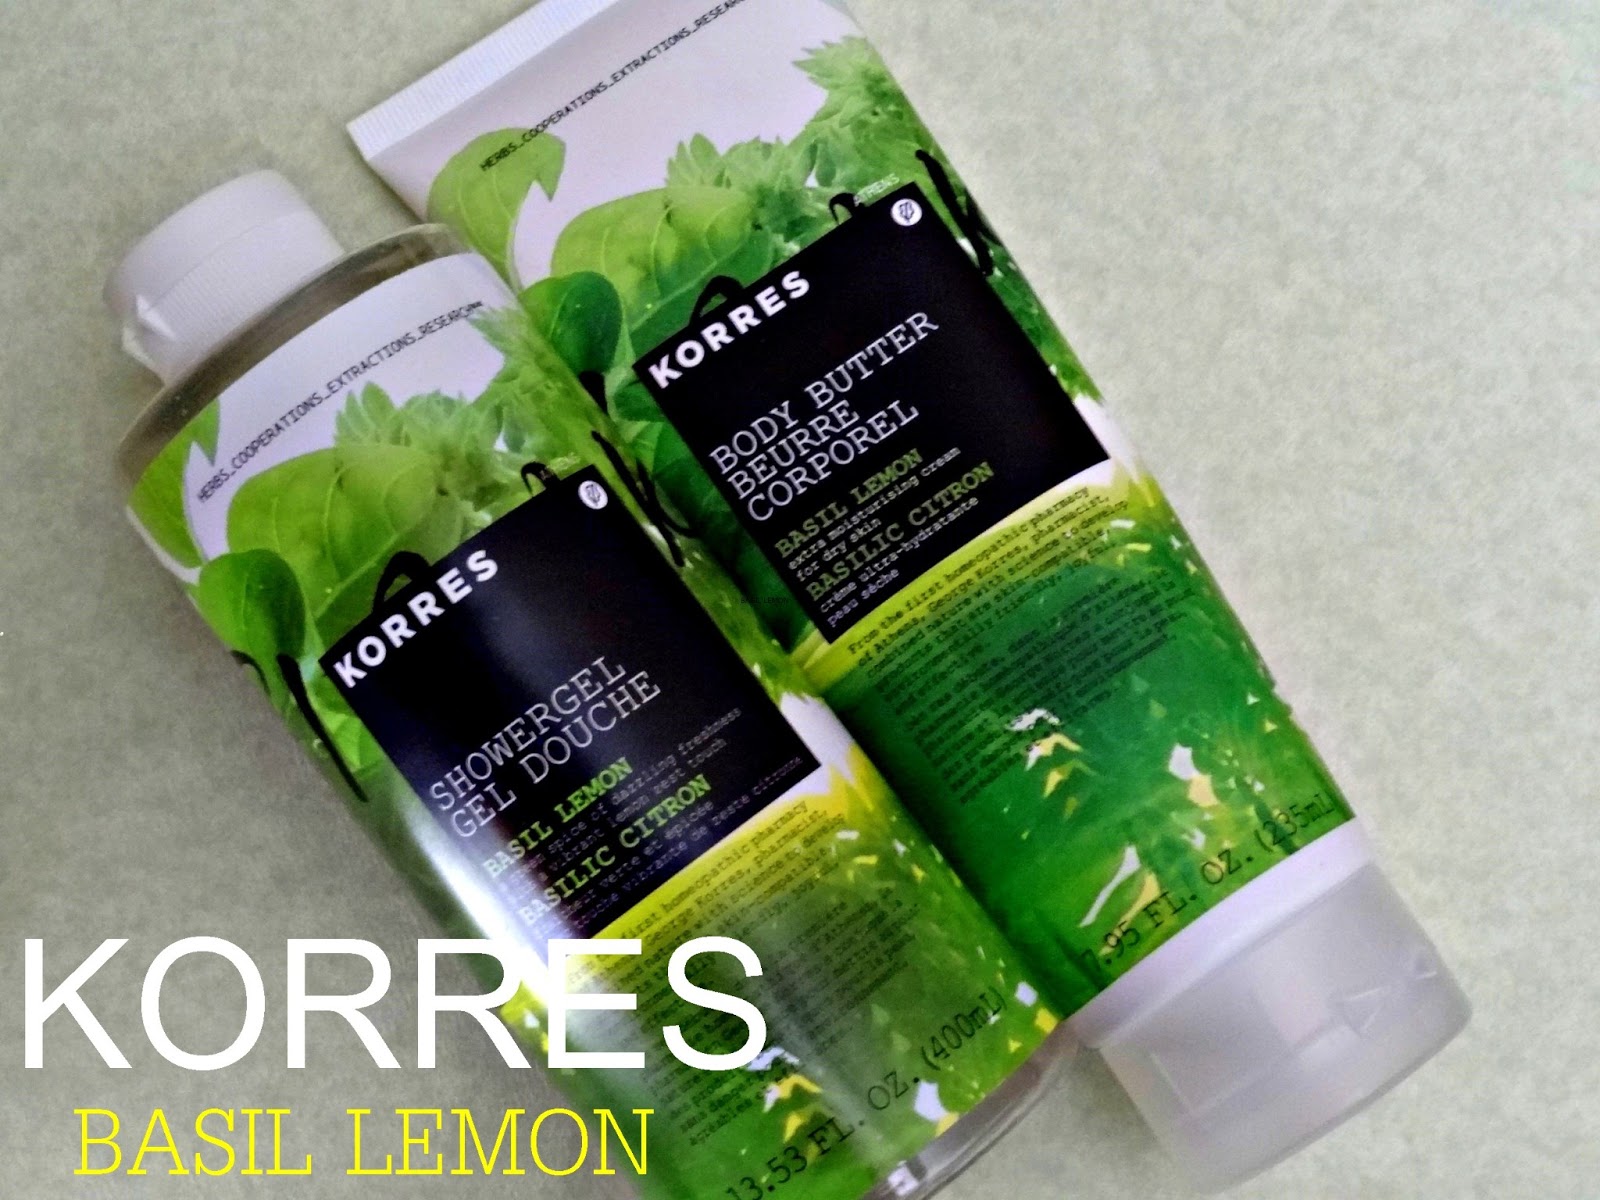 Korres+Basil+Lemon+Shower+Gel+and+Body+Butter+Reviews.JPG